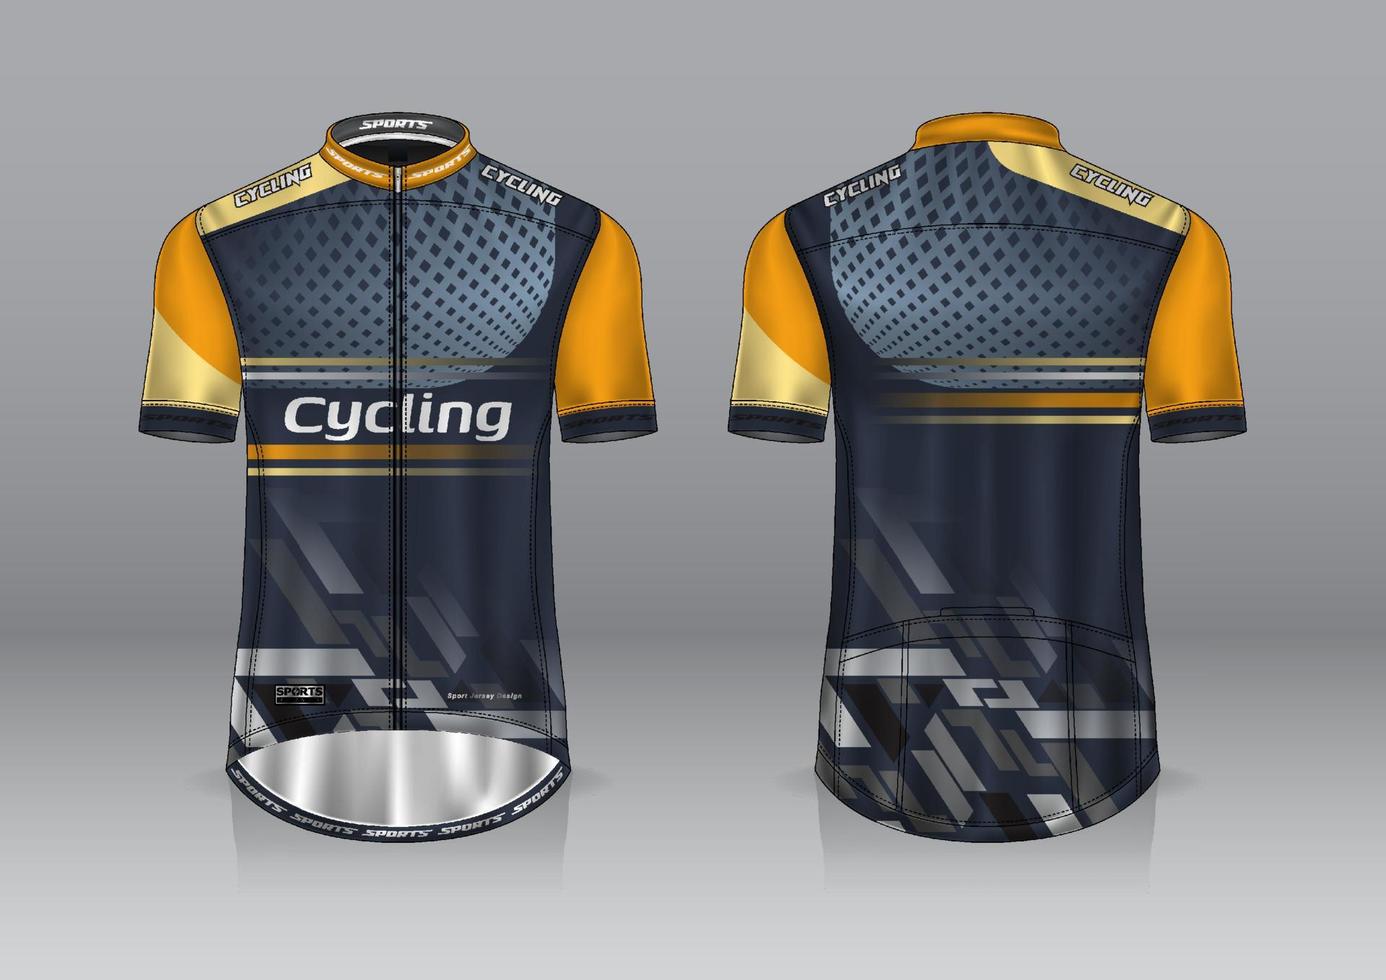 jerseydesign för cykling, framifrån och bakifrån, och lätt att redigera och skriva ut på tyg, sportkläder för cykellag vektor